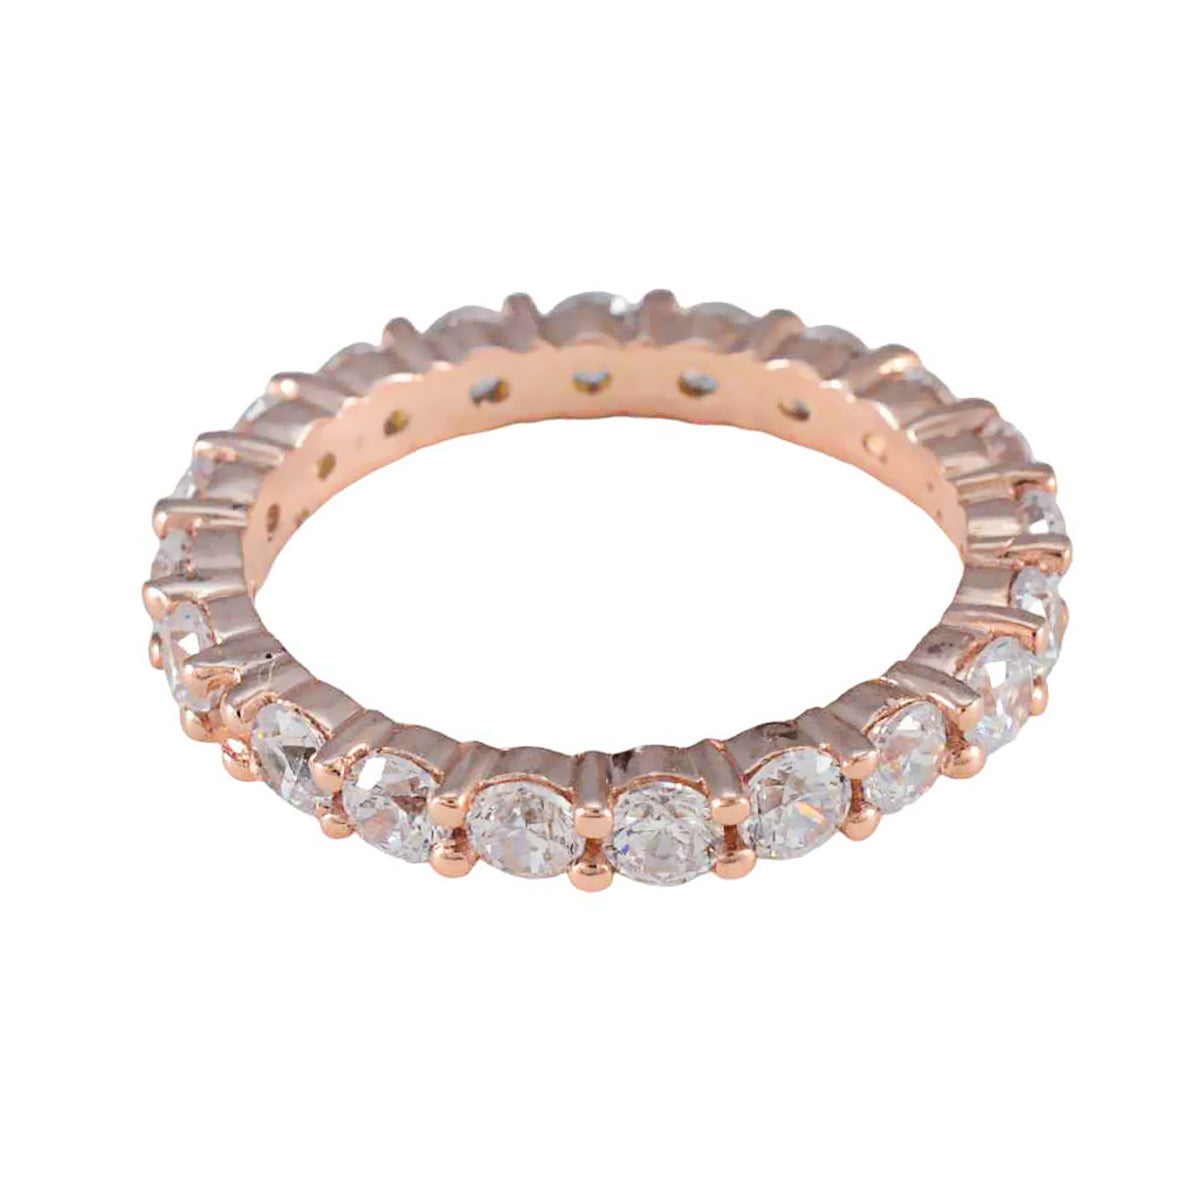 Riyo Jewelry Silberring mit Rosévergoldung, weißem CZ-Stein, runde Form, Krappenfassung, Brautschmuck, Halloween-Ring